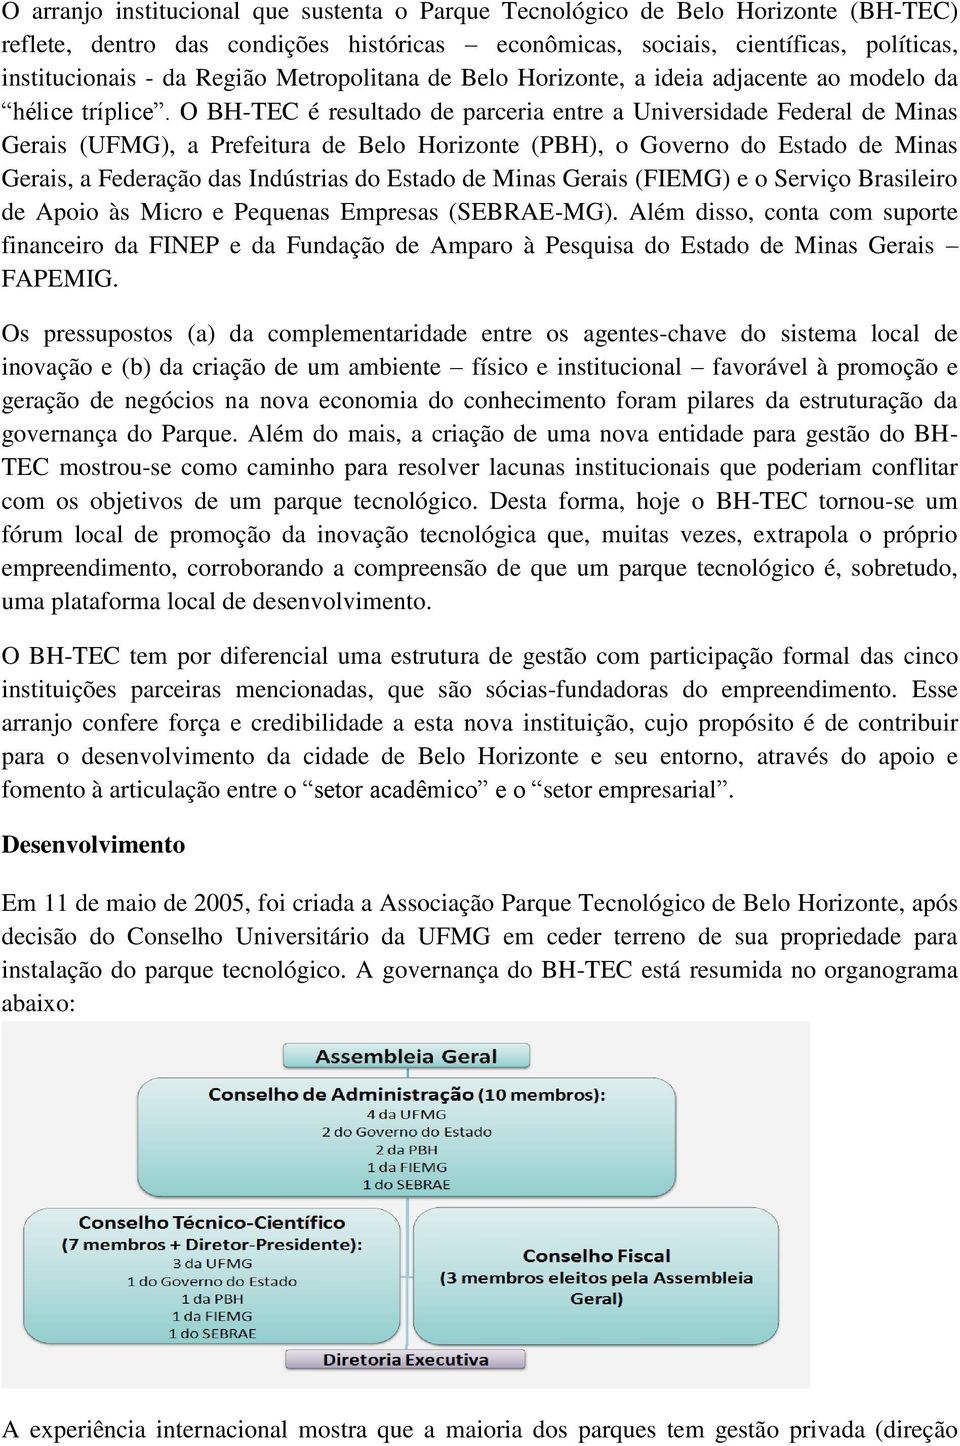 O BH-TEC é resultado de parceria entre a Universidade Federal de Minas Gerais (UFMG), a Prefeitura de Belo Horizonte (PBH), o Governo do Estado de Minas Gerais, a Federação das Indústrias do Estado